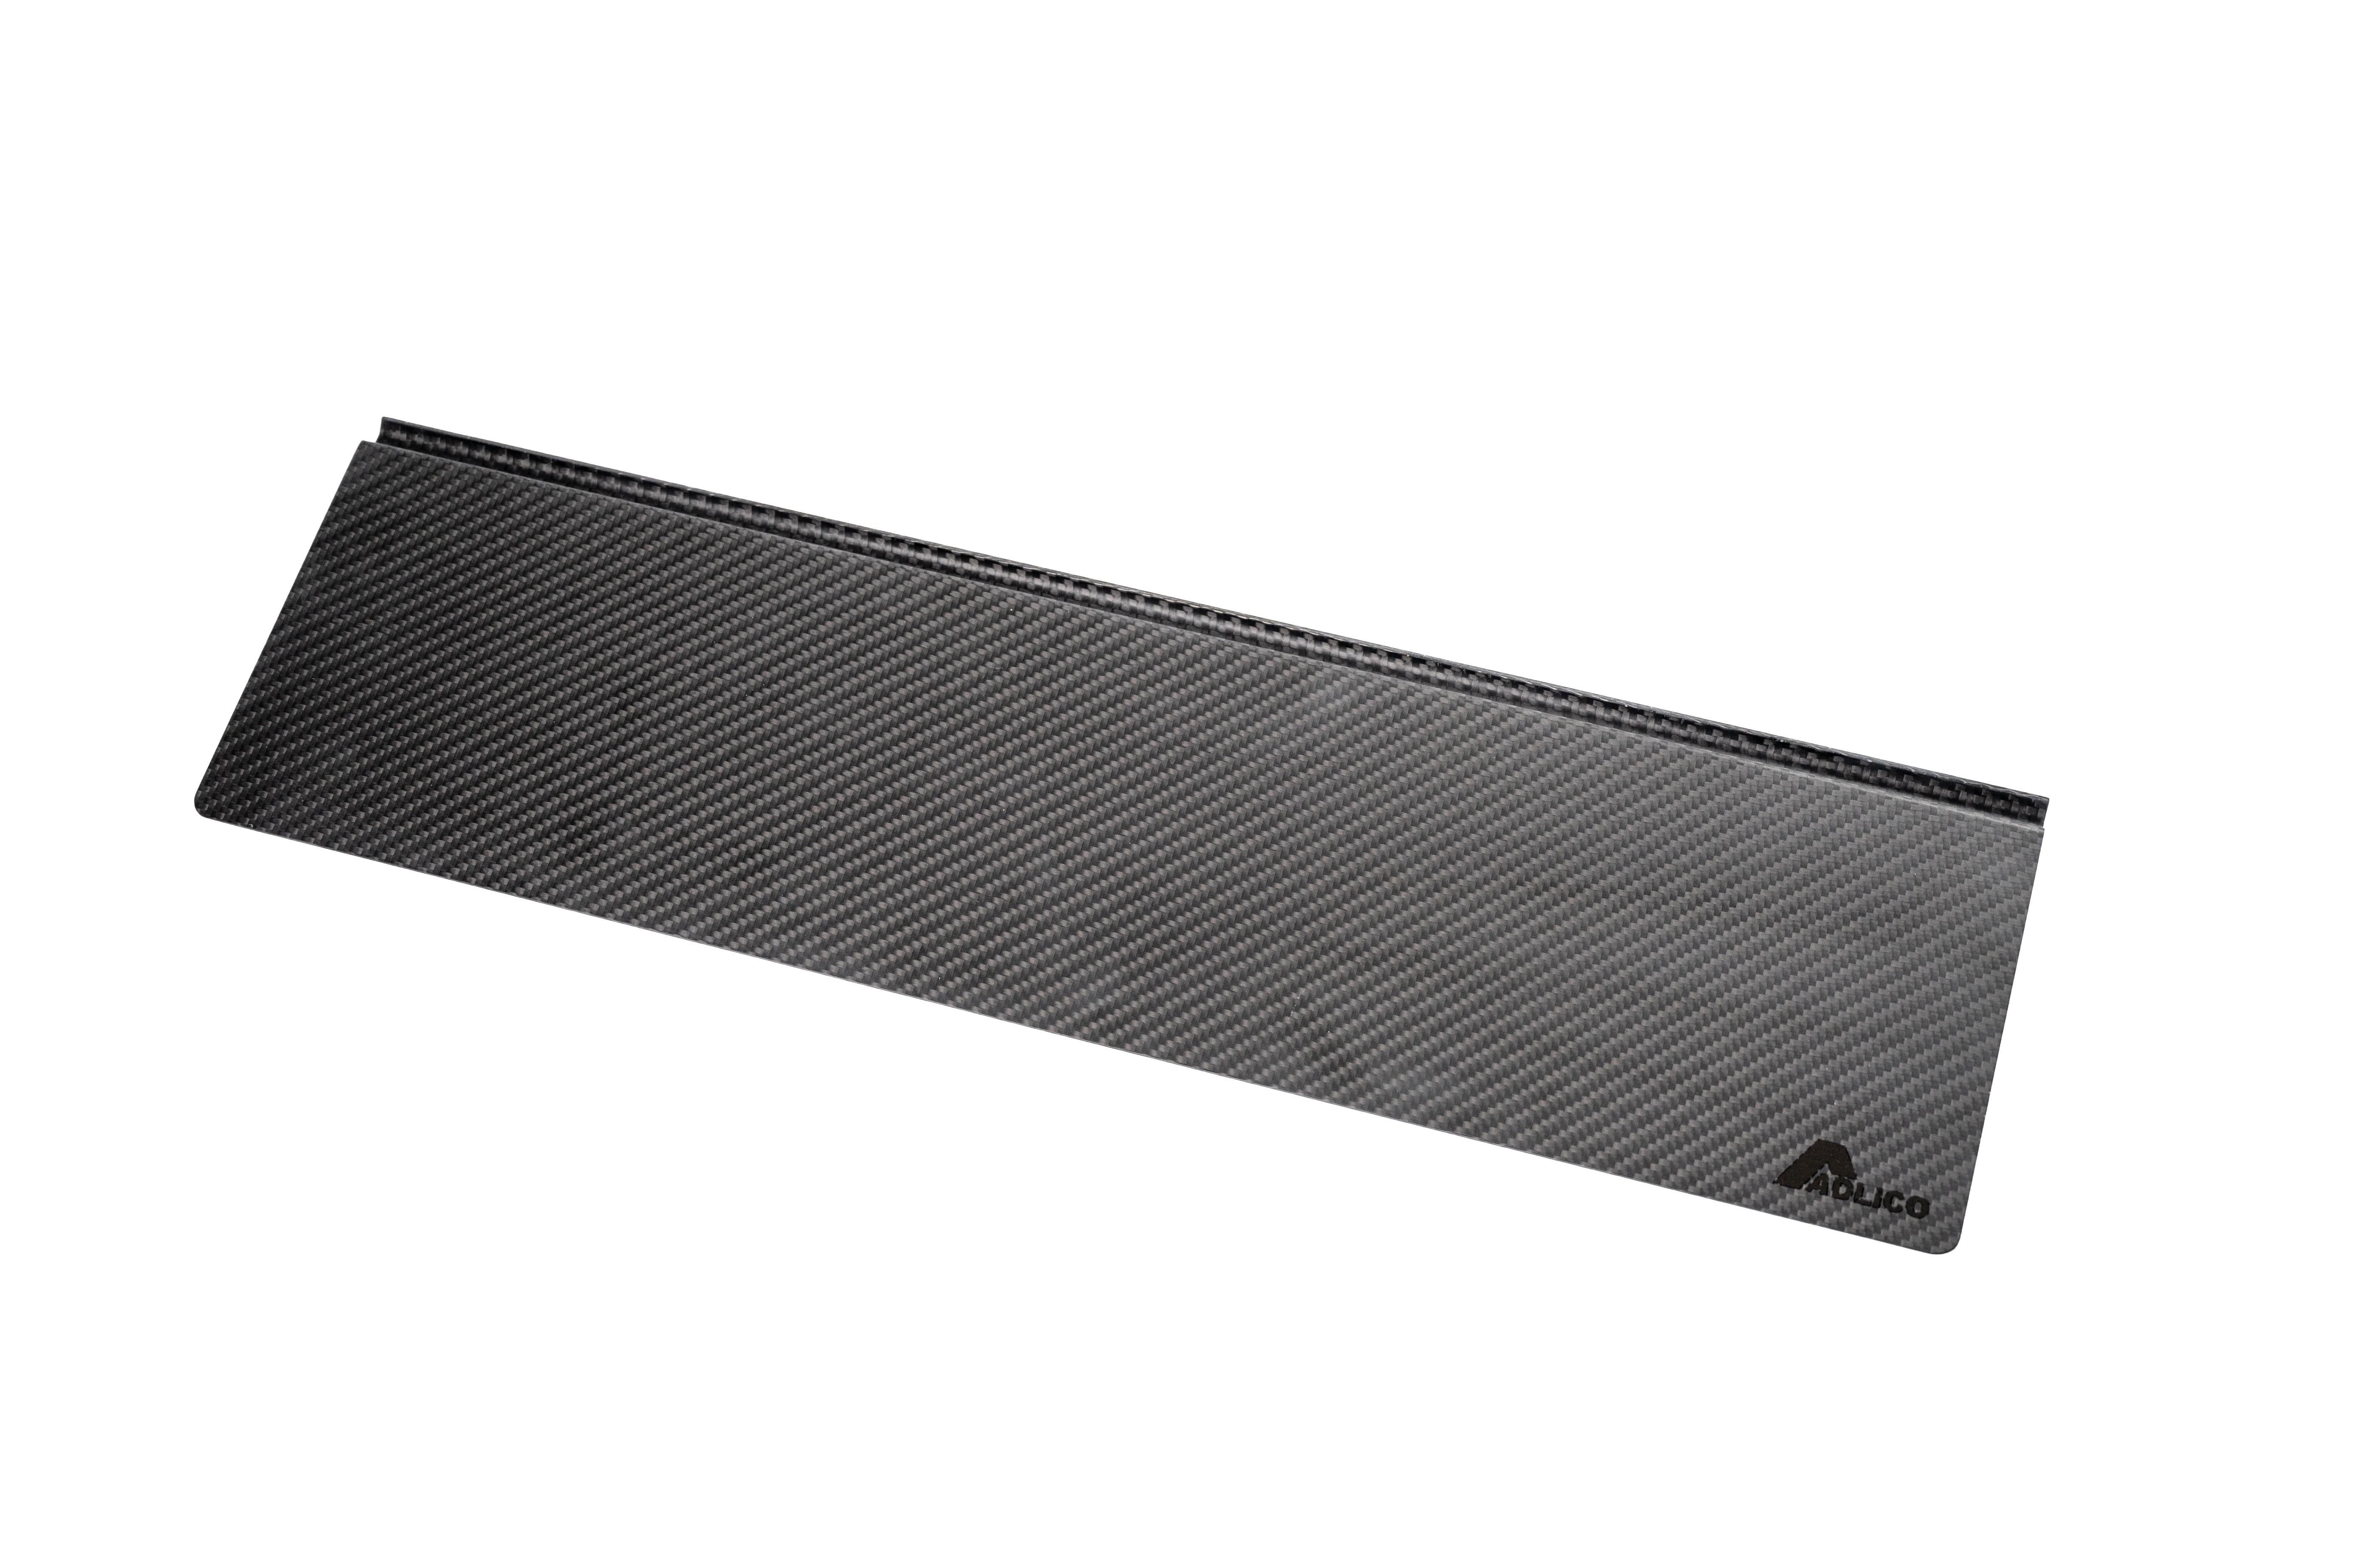 ADLiCO 三單位碳纖維側延伸桌板